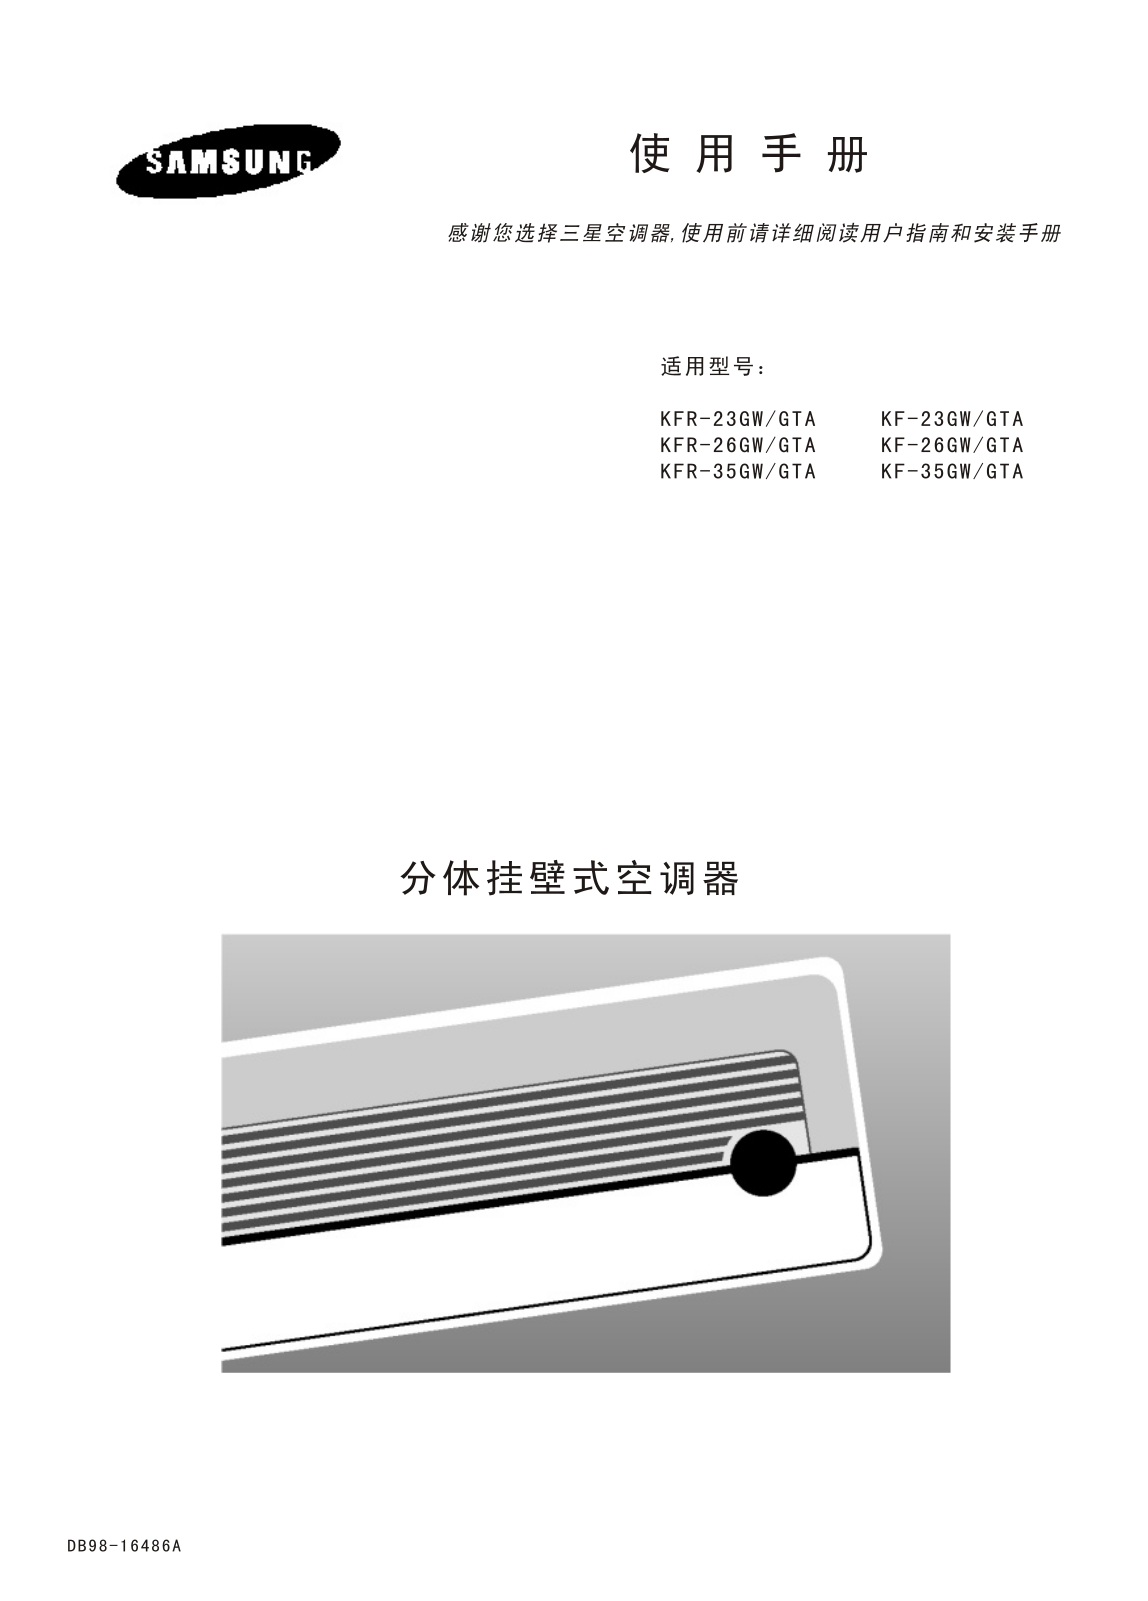 Samsung KFR-35W/GPC, KFR-35G/GPC, KF-35W/GPC, KF-35G/GPC Manual